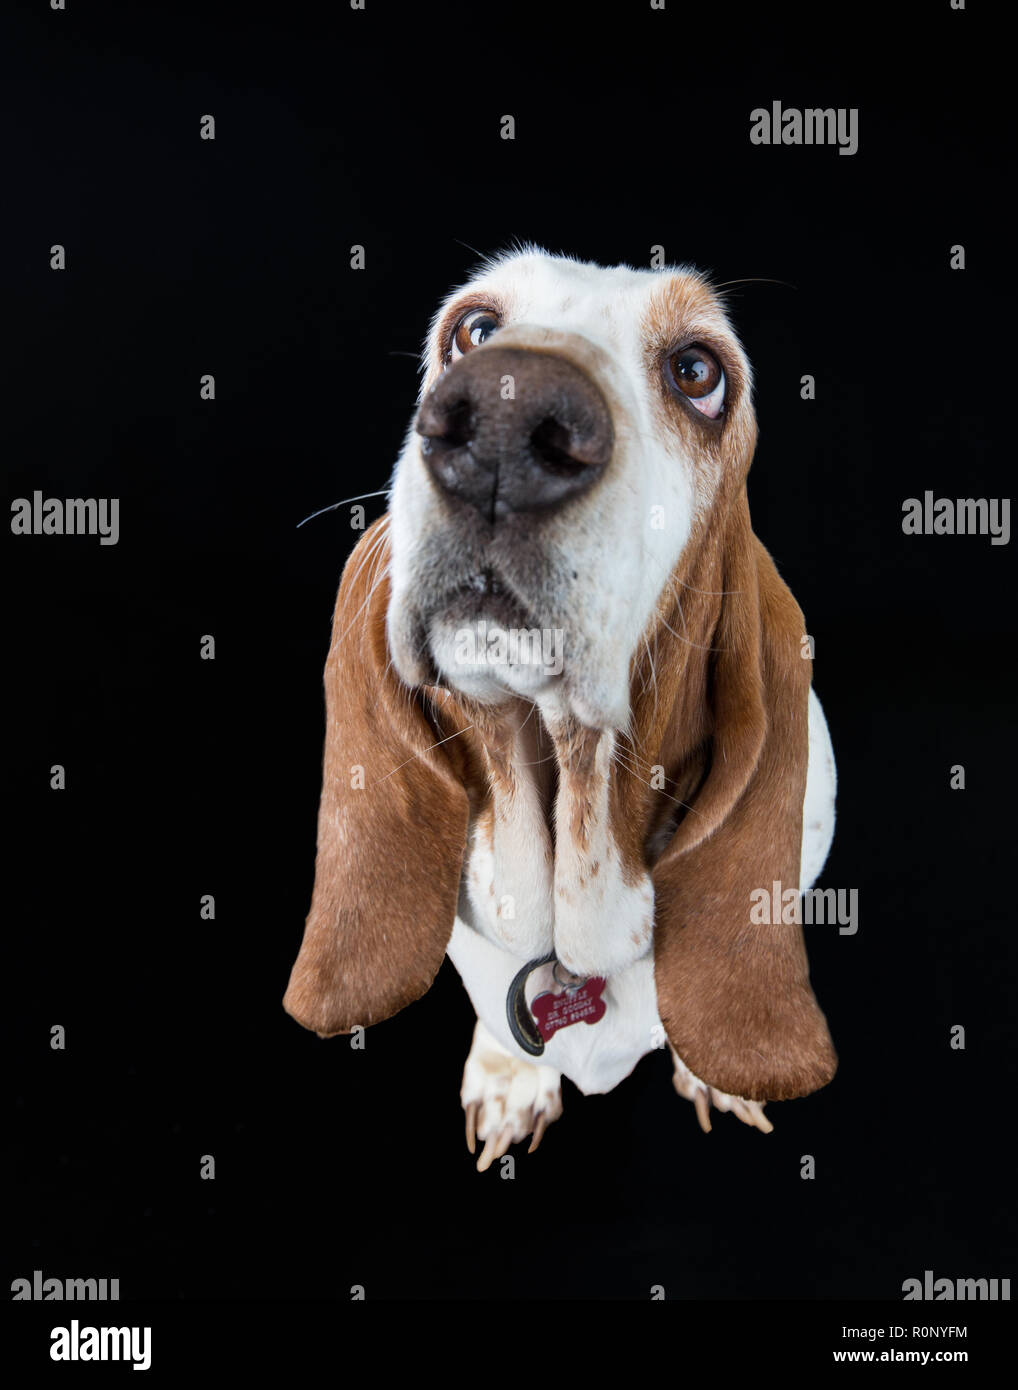 Prise grand angle d'un basset-hound à inploringly vers le haut contre un arrière-plan sombre studio Banque D'Images